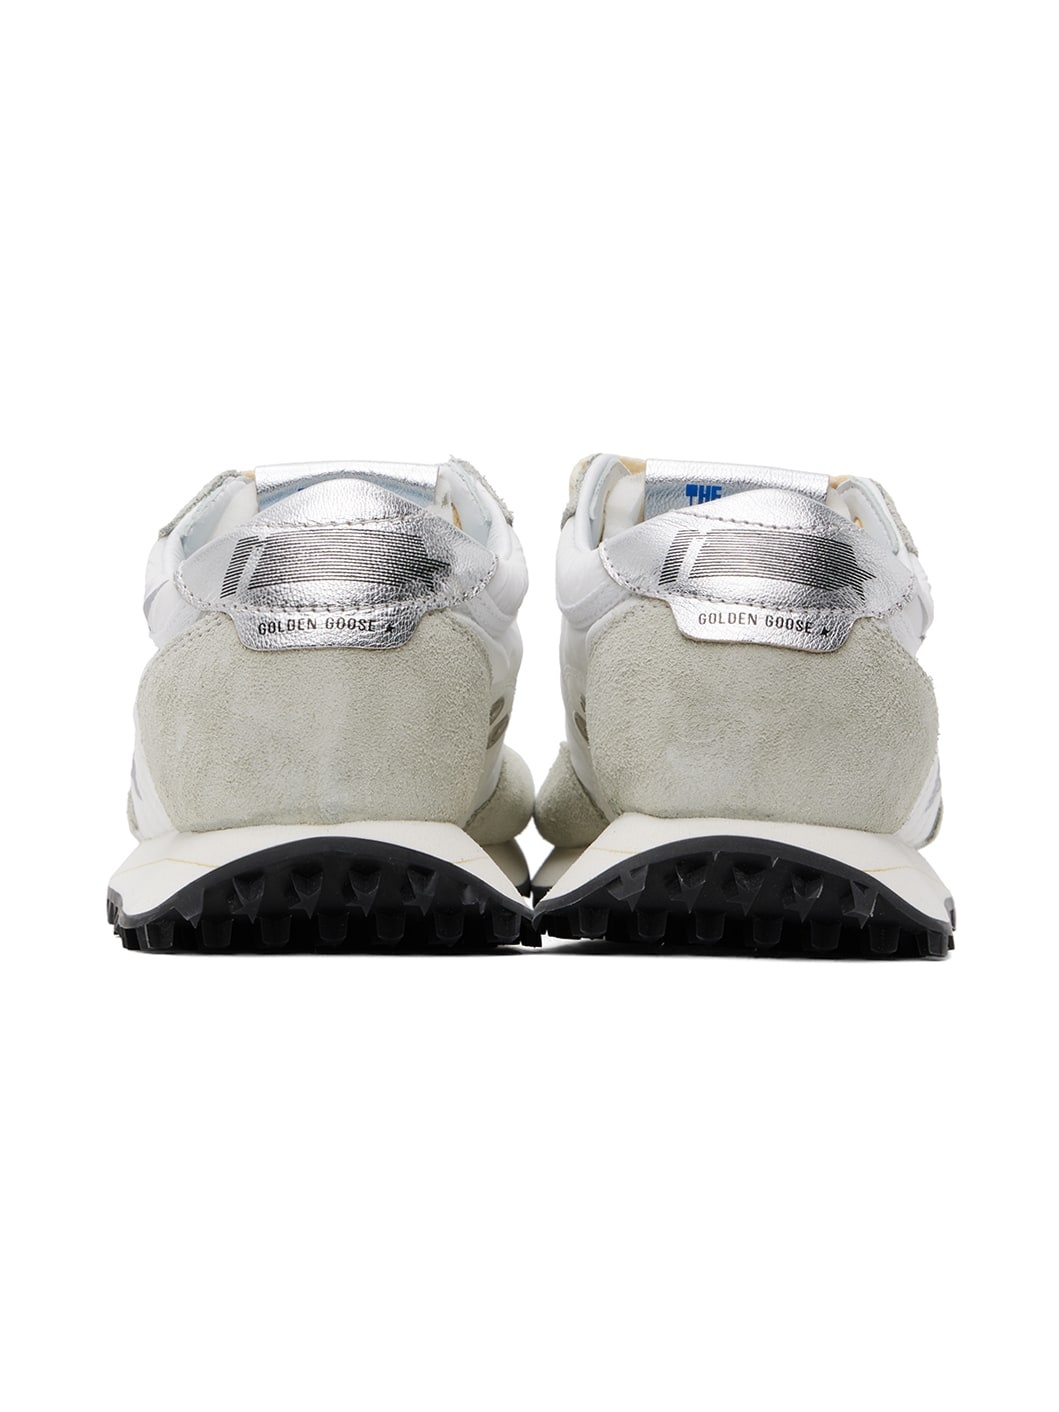 White & Gray Marathon Sneakers - 2